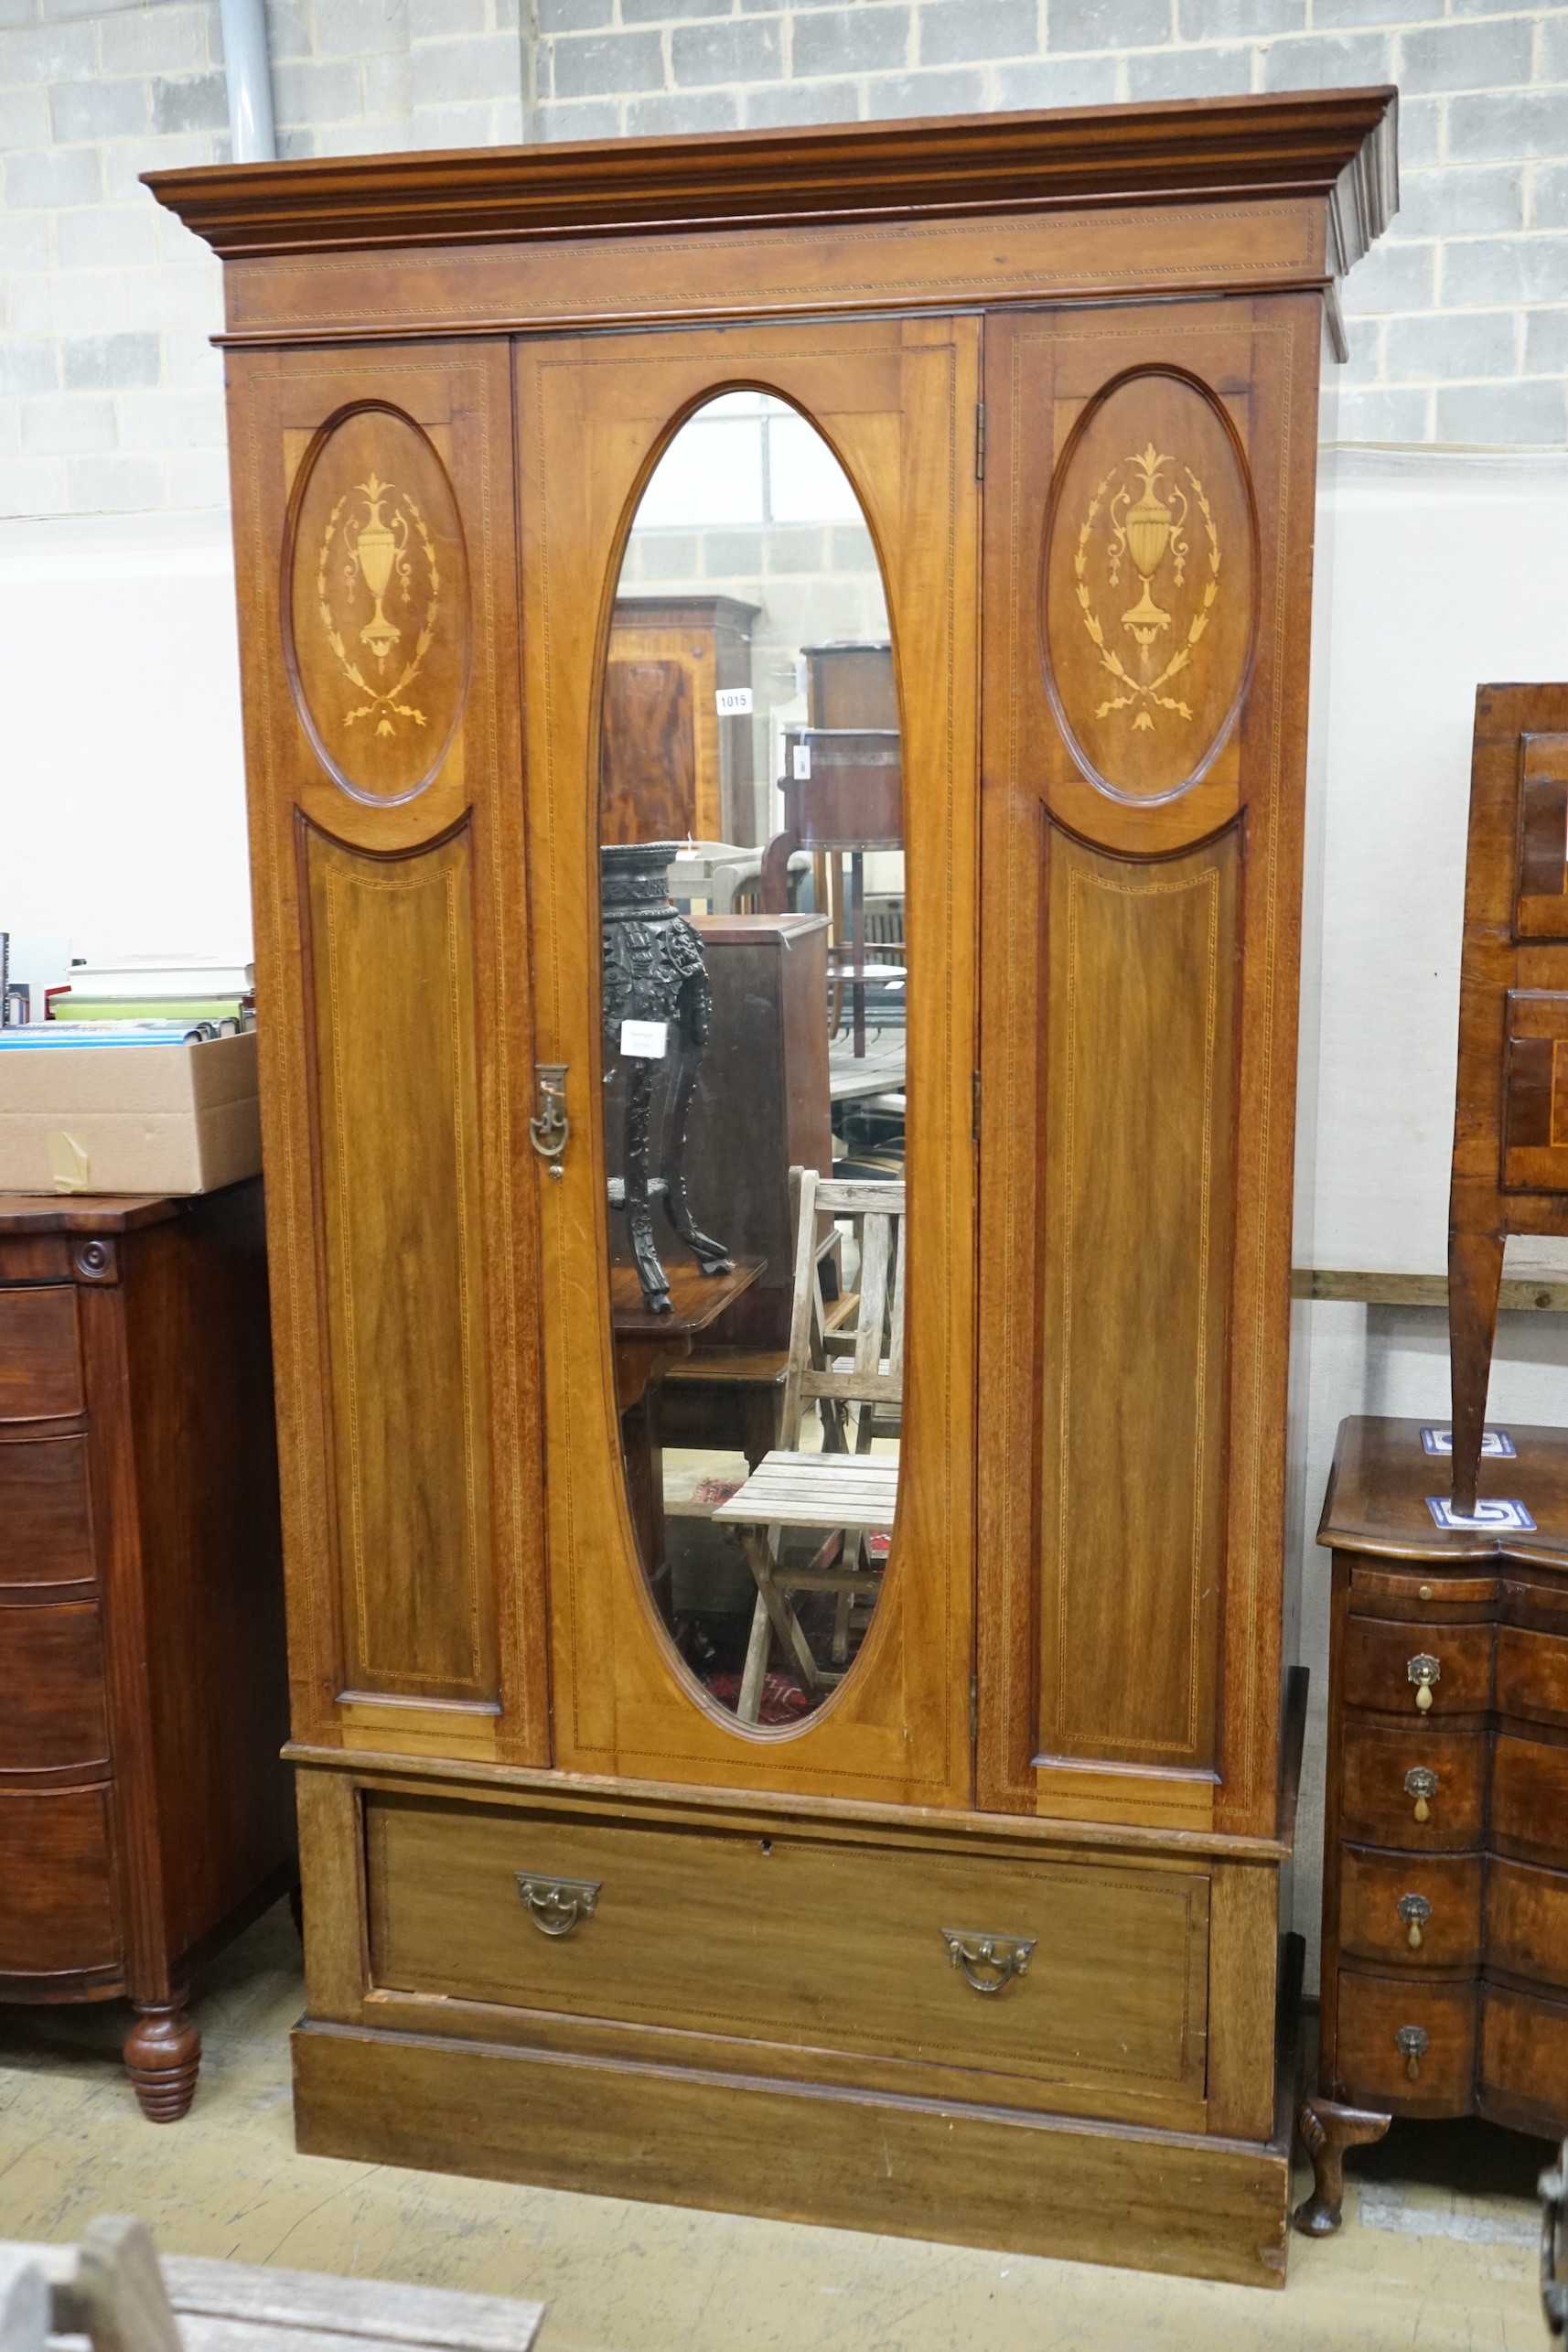 An Edwardian inlaid mahogany wardrobe, width 114cm, depth 48cm, height 204cm